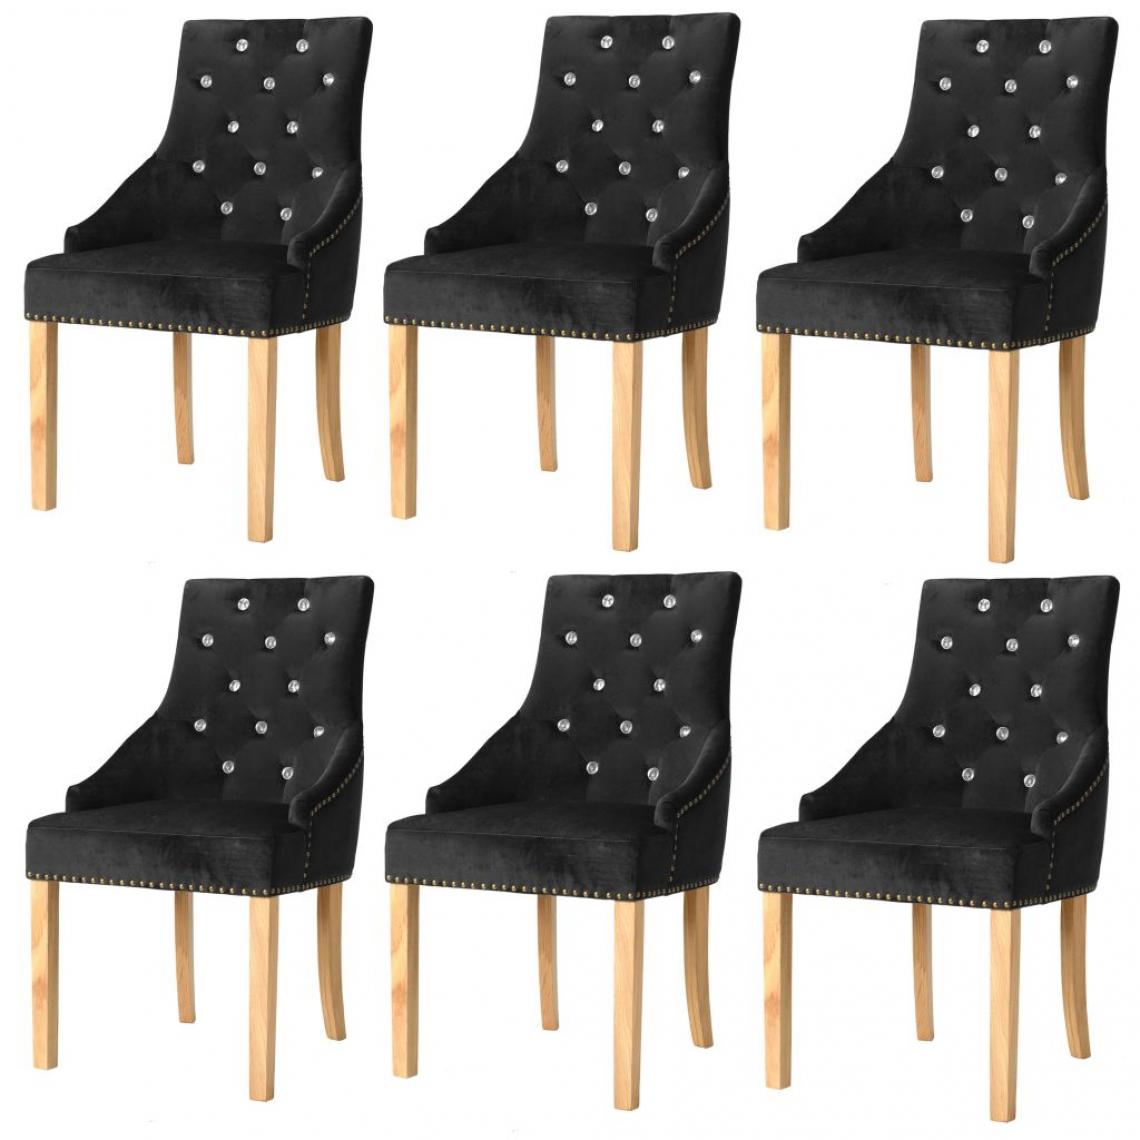 Decoshop26 - Lot de 6 chaises de salle à manger cuisine design classique chêne massif et velours noir CDS022668 - Chaises